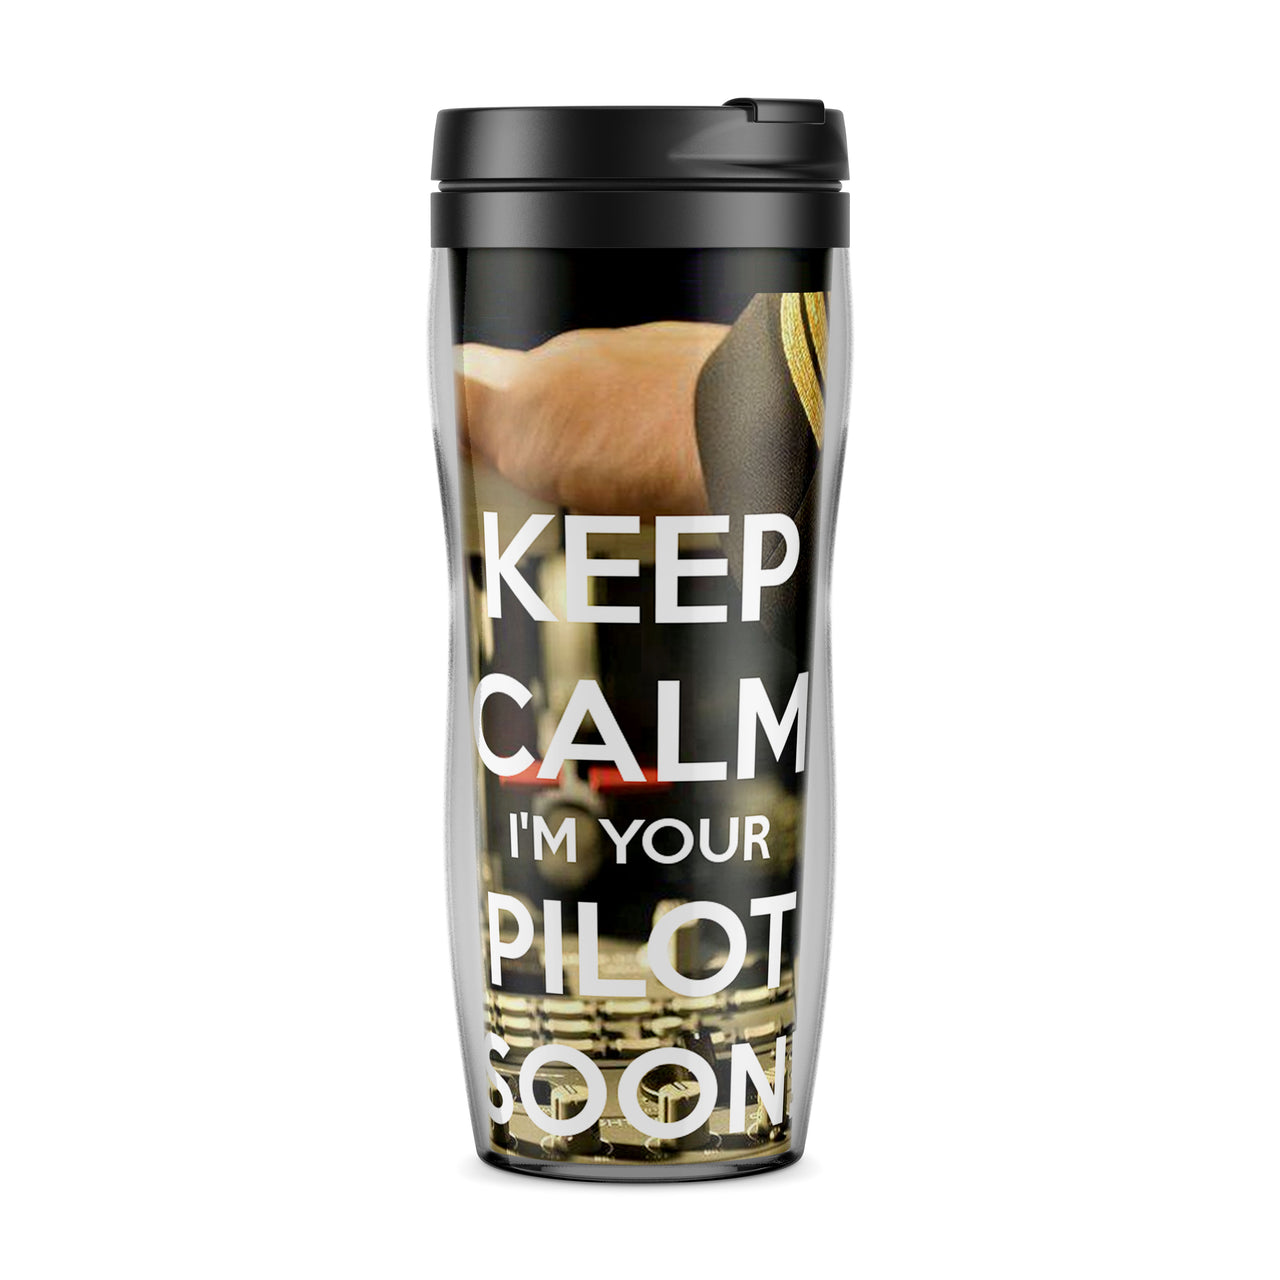 Keep Calm I'm your Pilot Soon Designed Travel Mugs